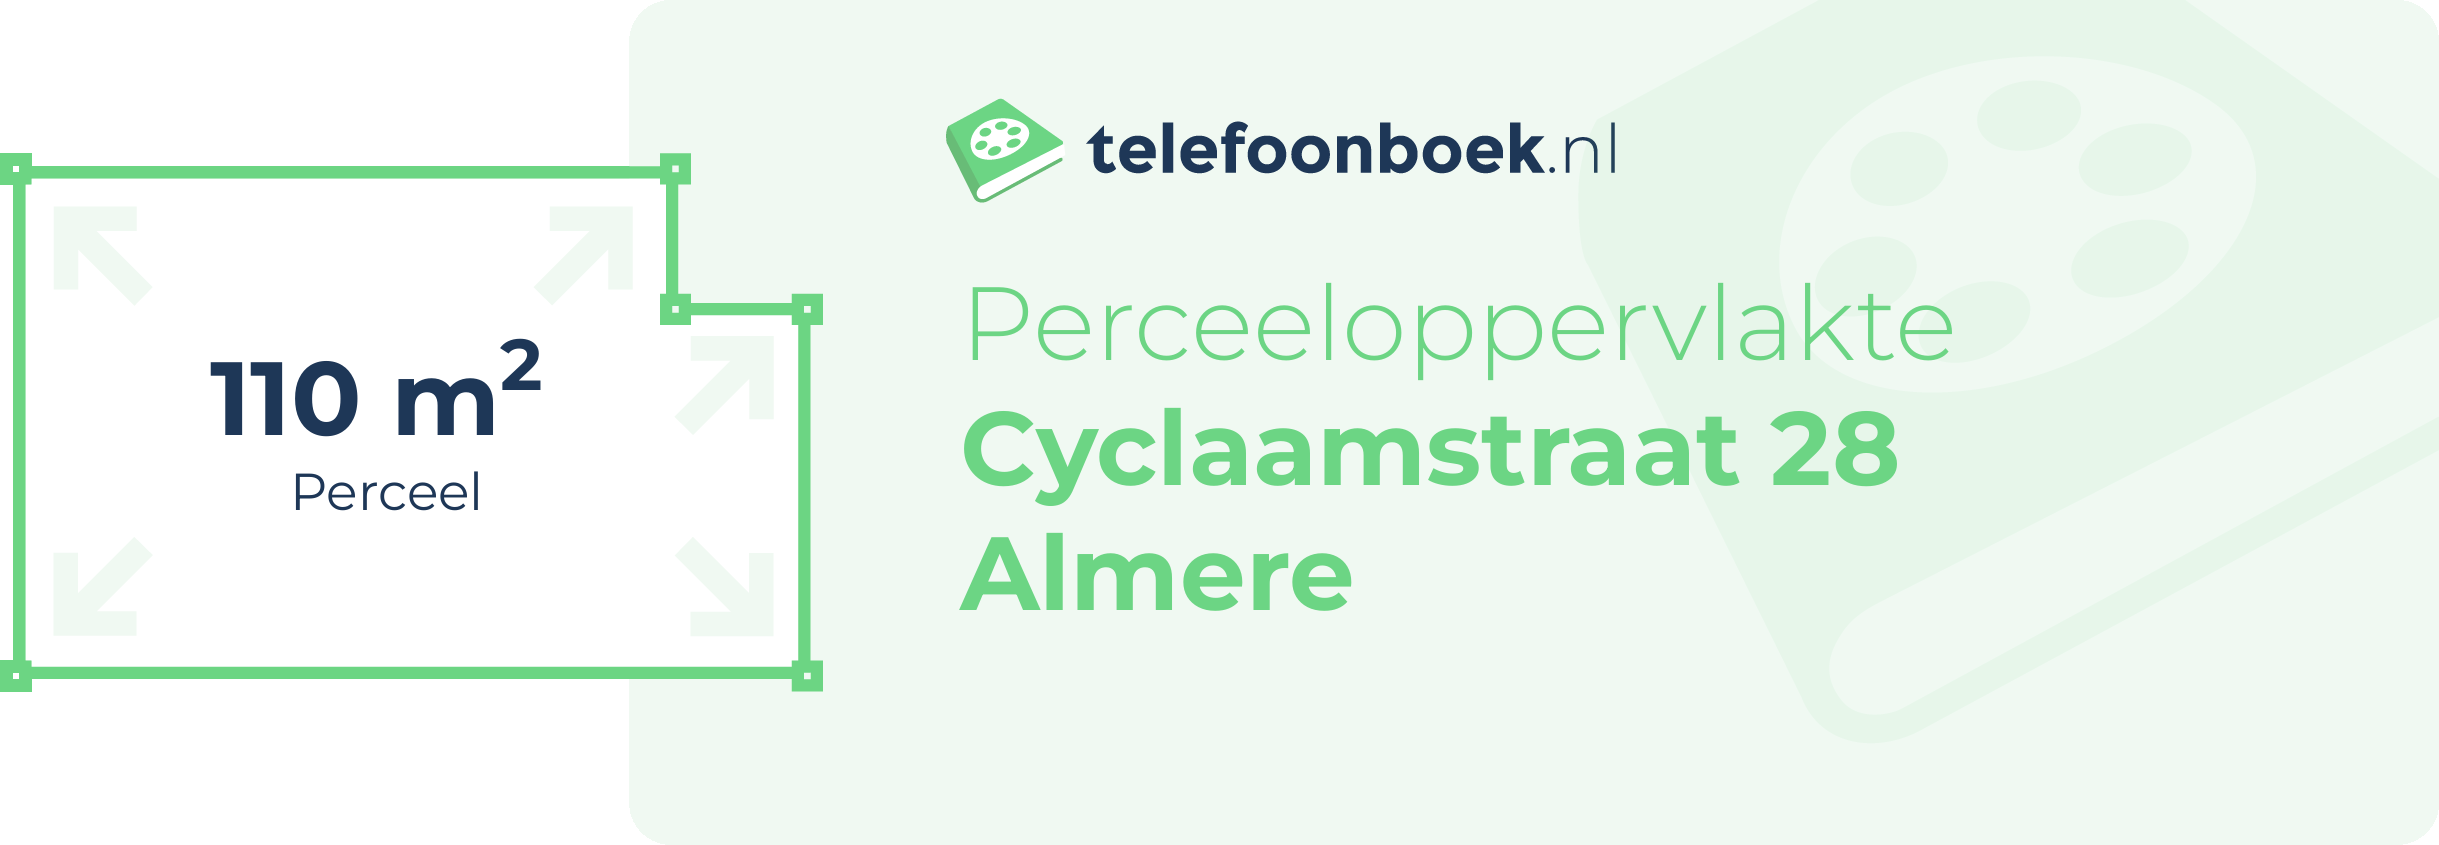 Perceeloppervlakte Cyclaamstraat 28 Almere